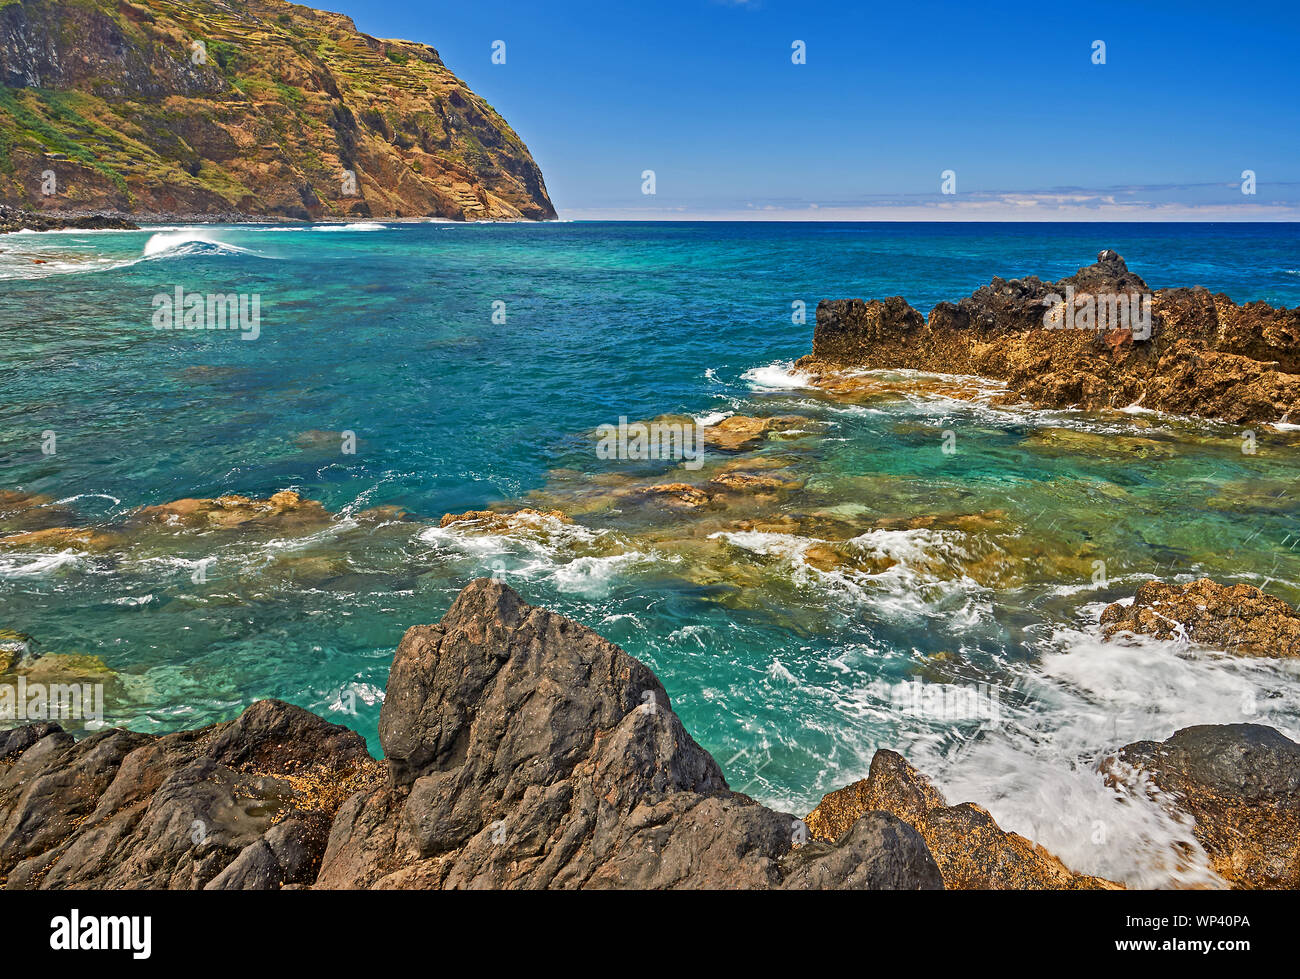 Une île volcanique de l'océan Atlantique et du nord du littoral à Madère Porto Moniz, avec des vagues se brisant sur les rochers et les rives. Banque D'Images